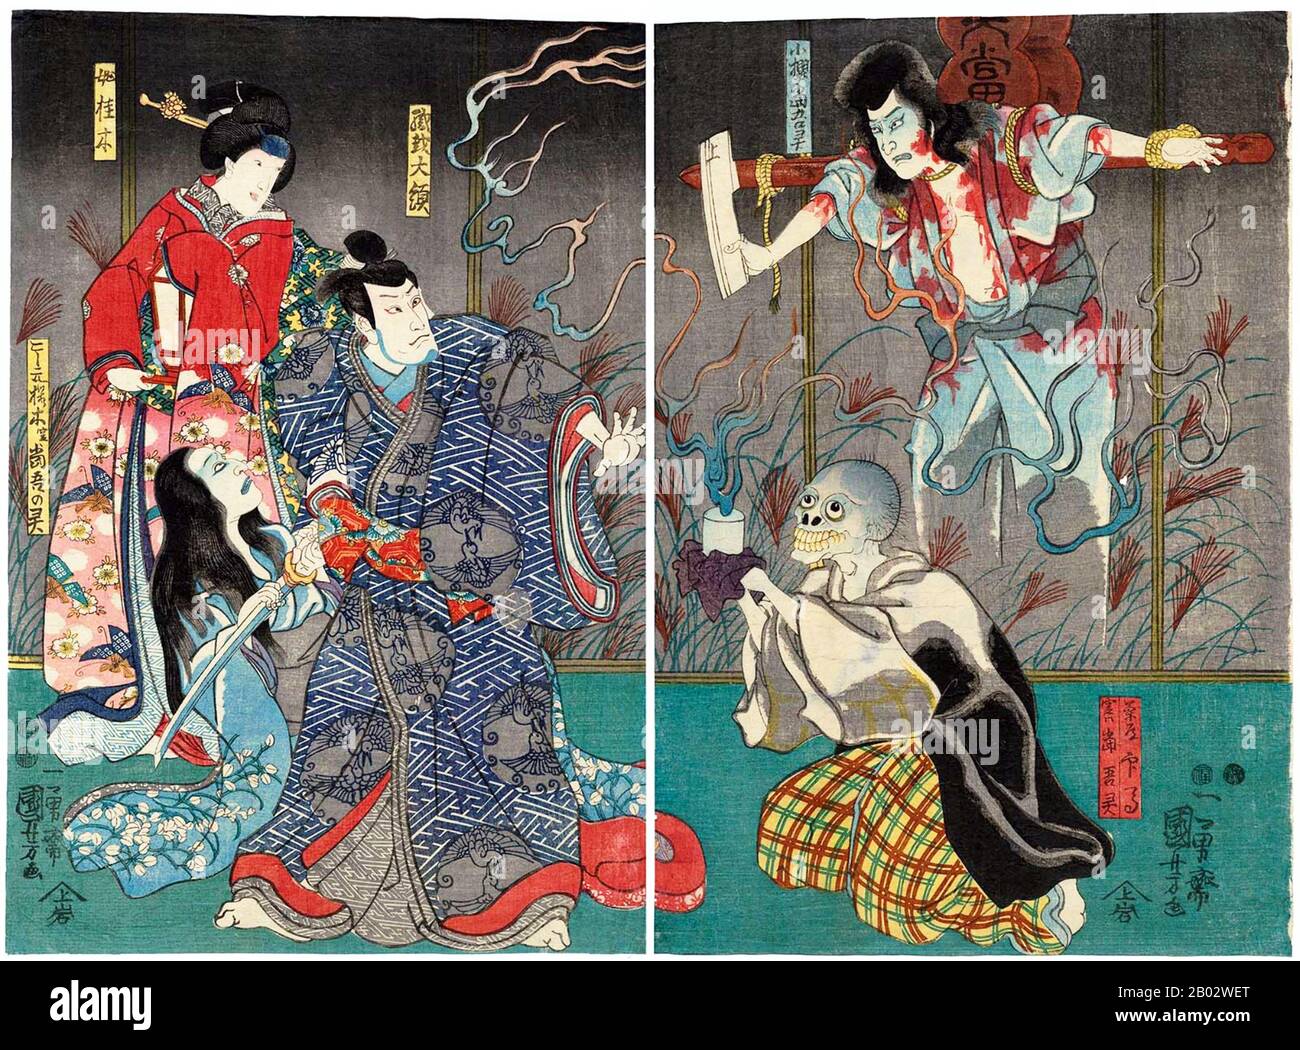 Utagawa Kuniyoshi (1 de enero de 1798 - 14 de abril de 1861) fue uno de los últimos grandes maestros del estilo ukiyo-e japonés de grabados y pintura en bloque de madera. Está asociado con la escuela de Utagawa. La gama de temas preferidos de Kuniyoshi incluía muchos géneros: Paisajes, hermosas mujeres, actores Kabuki, gatos y animales míticos. Es conocido por las representaciones de las batallas de samurai y héroes legendarios. Su obra de arte fue afectada por influencias occidentales en la pintura del paisaje y la caricatura. Foto de stock